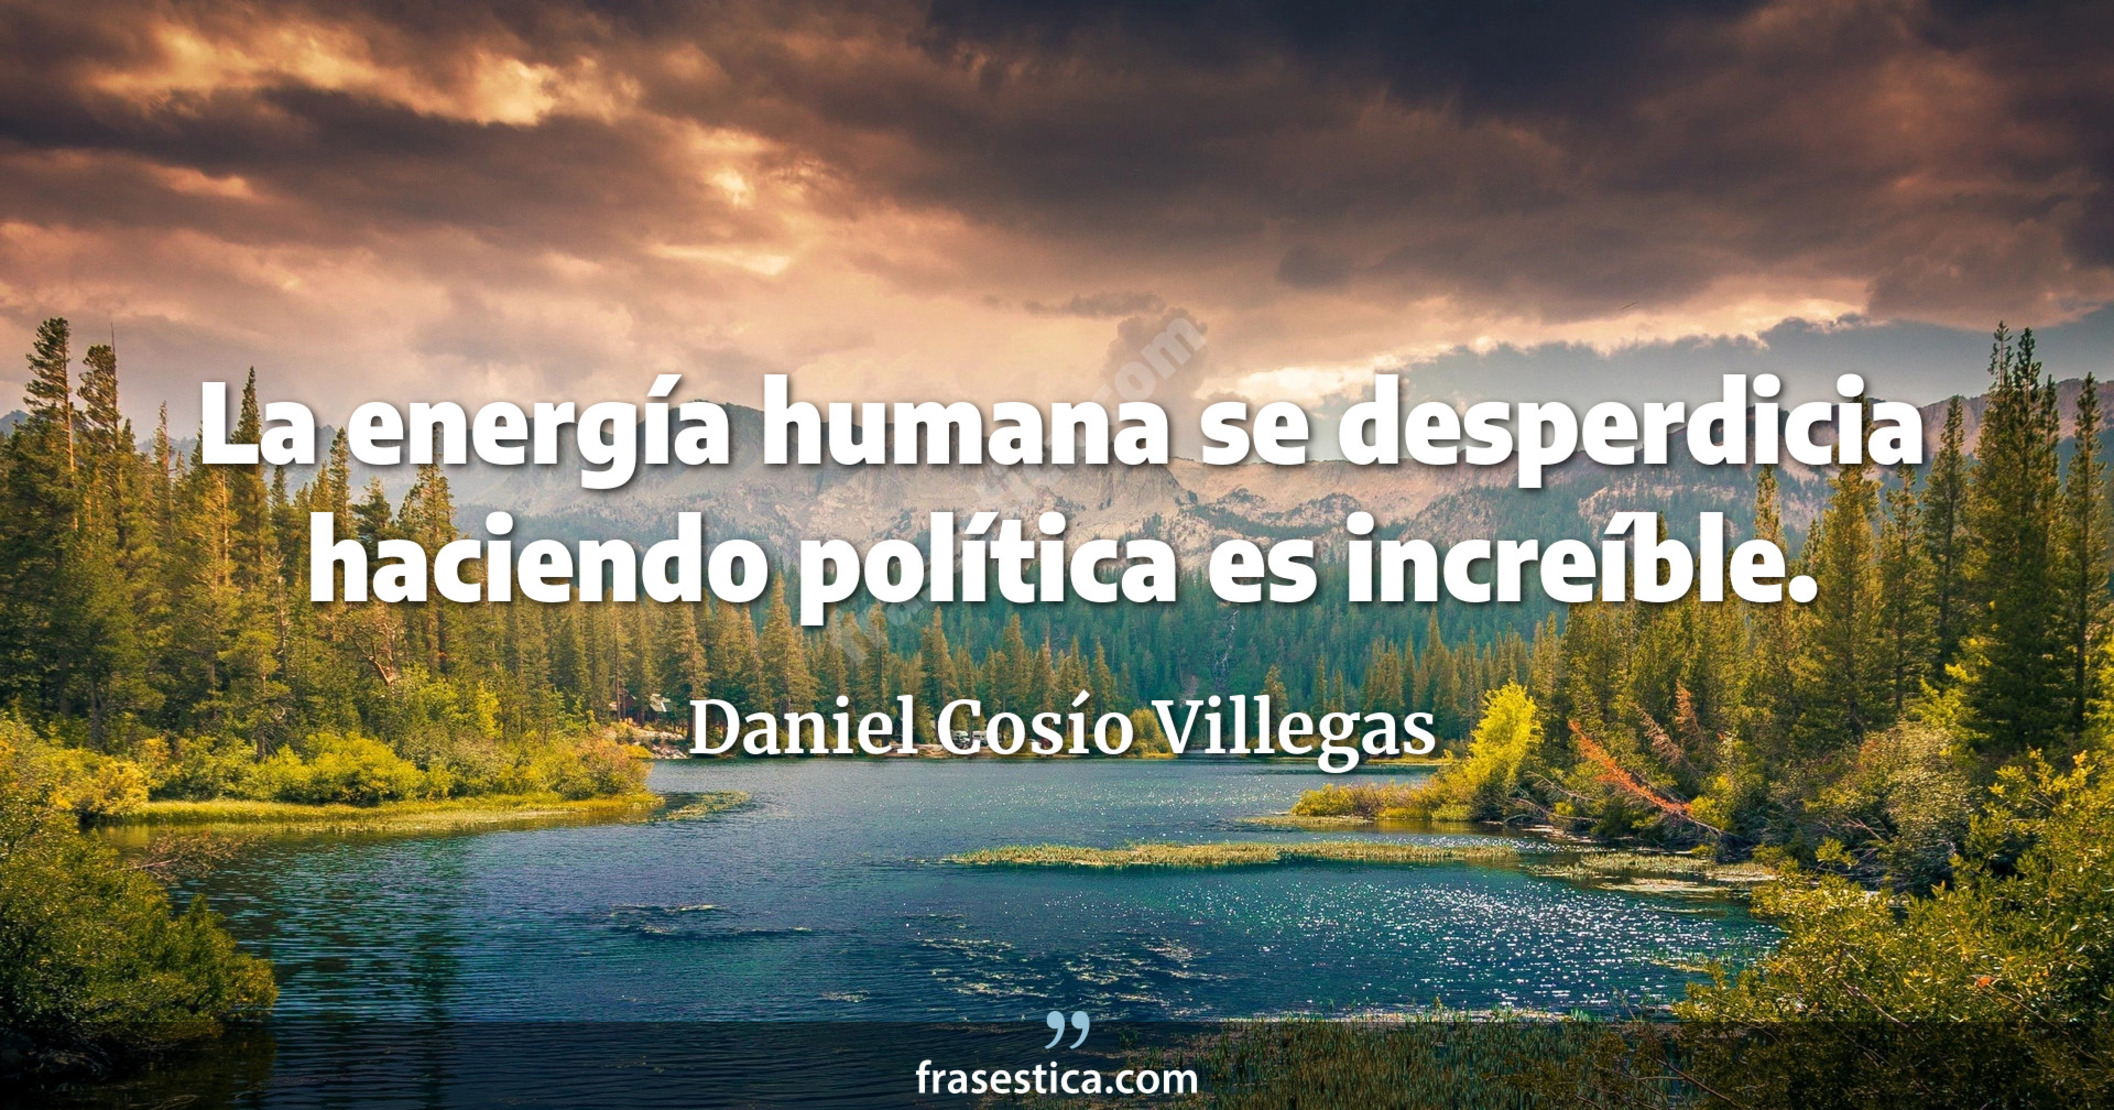 La energía humana se desperdicia haciendo política es increíble. - Daniel Cosío Villegas